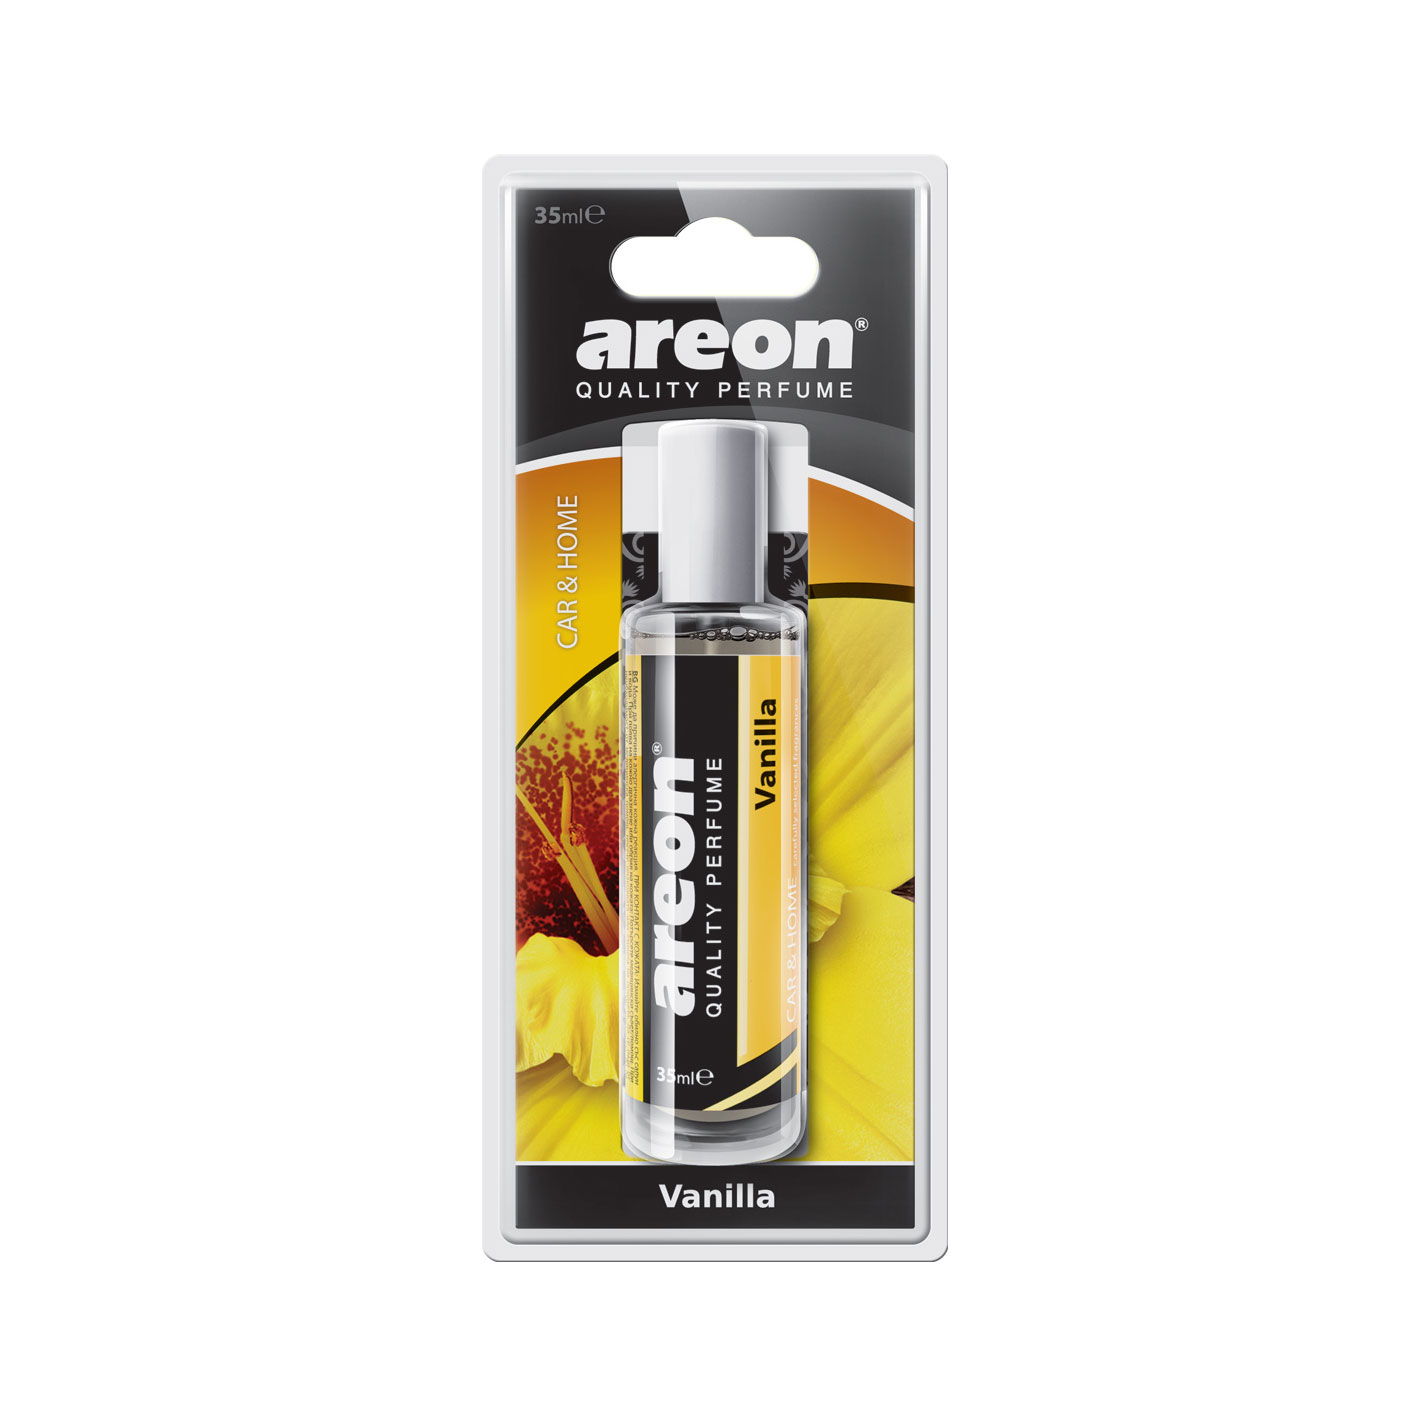 Areon Perfume 35ml Vanilla